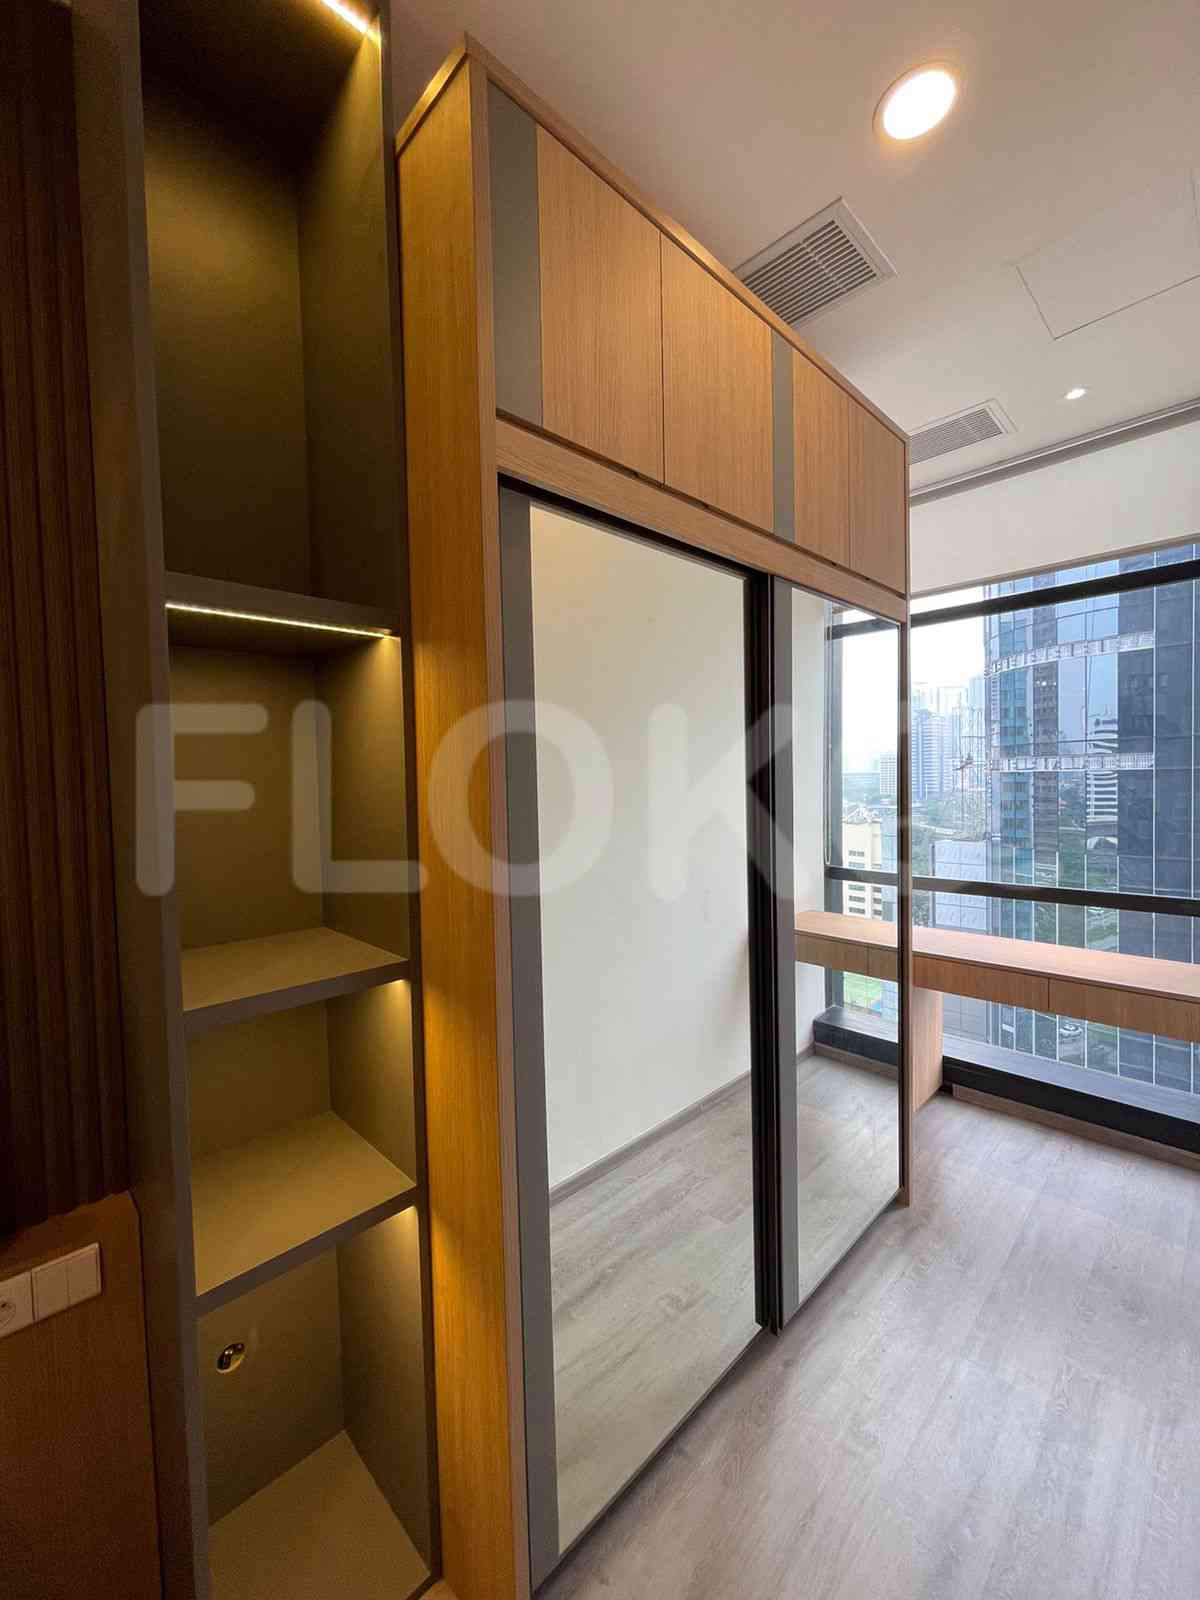 3 Bedroom on 10th Floor for Rent in Sudirman Suites Jakarta - fsuaf7 3